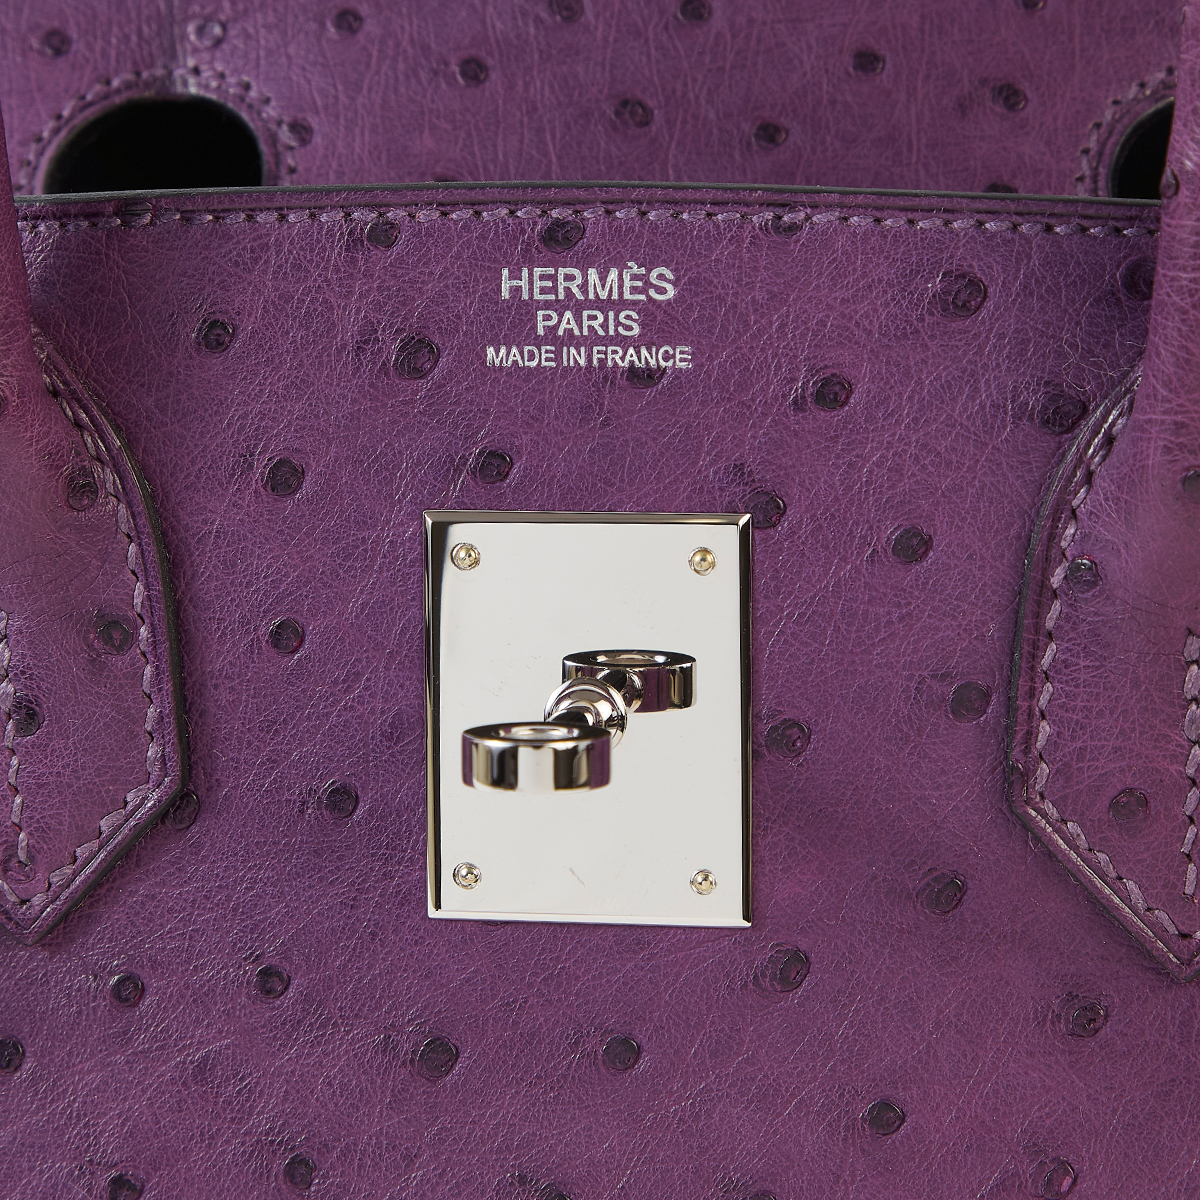 Hermès Bleu Indigo Birkin 30cm of Ostrich with Palladium Hardware, Handbags & Accessories Online, Ecommerce Retail